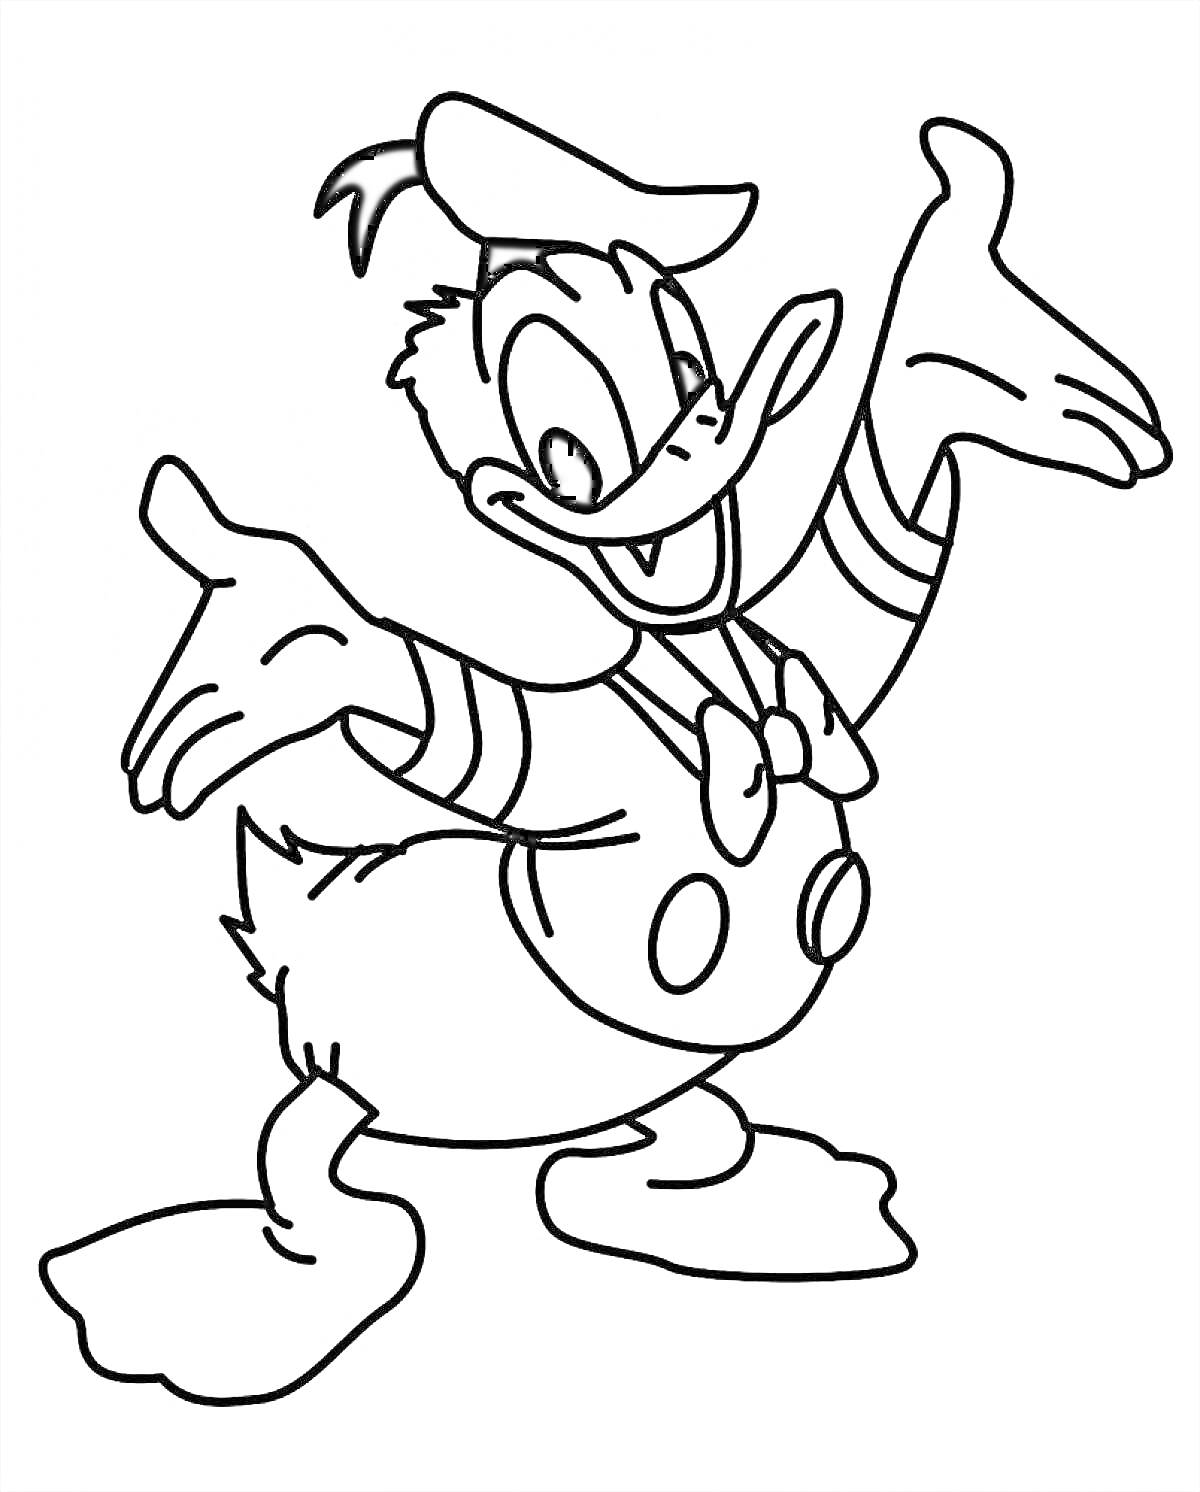 Раскраска Дональд Дак в матросском костюме с поднятыми руками